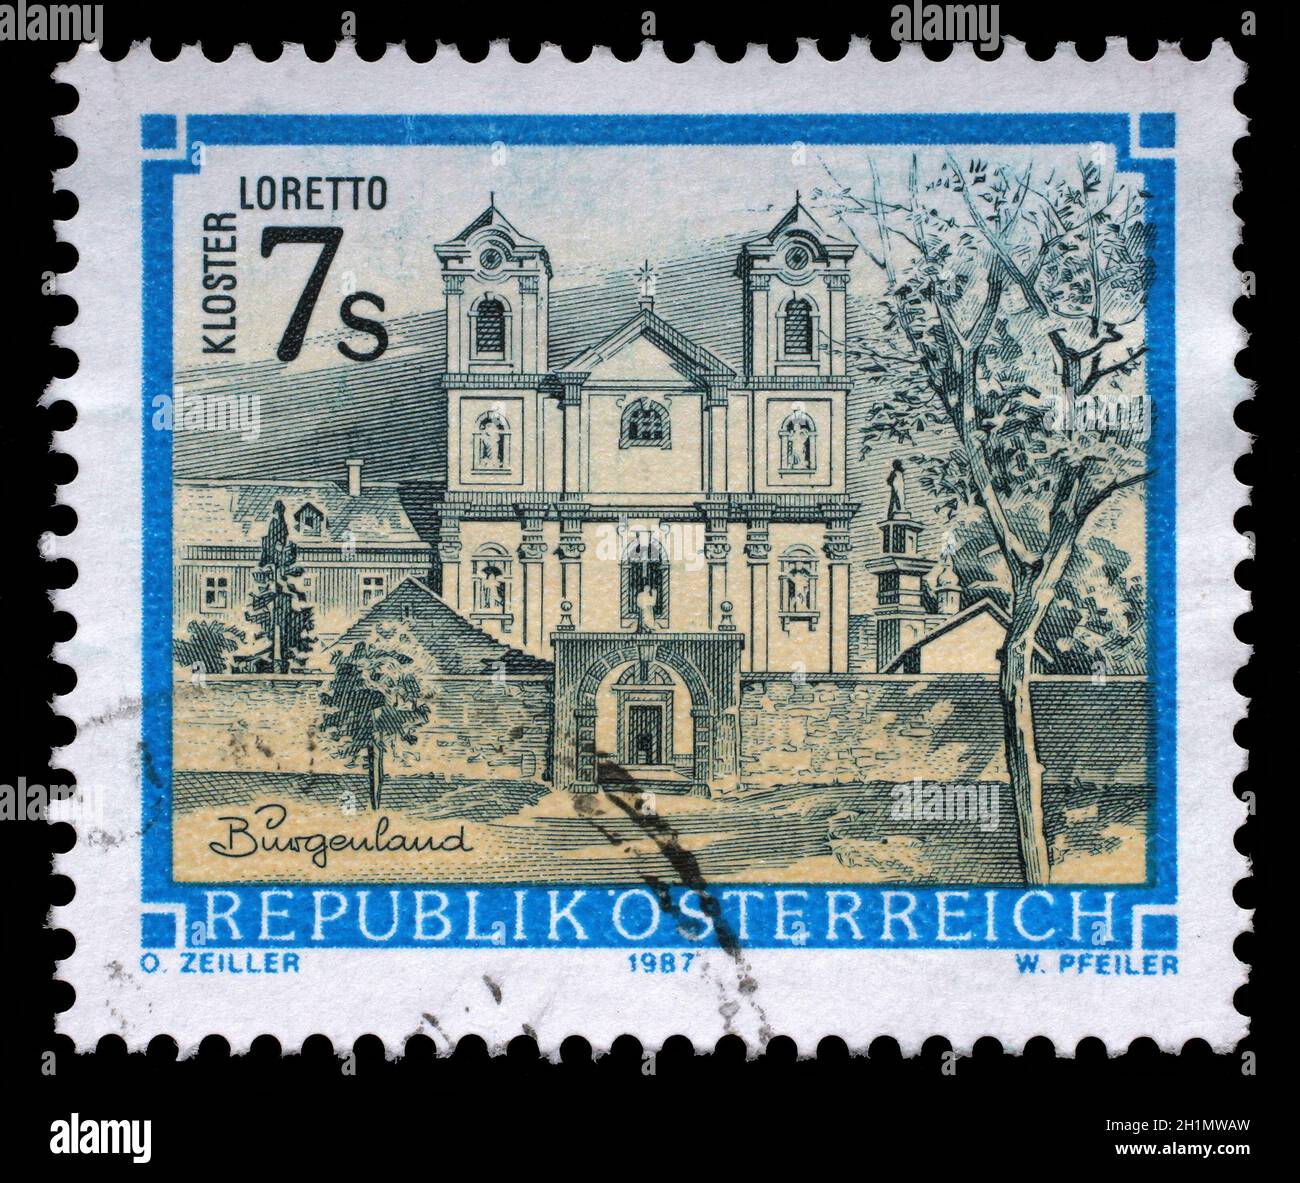 Timbro stampato da Austria, mostra Loretto monastero nel Burgenland, circa 1987 Foto Stock